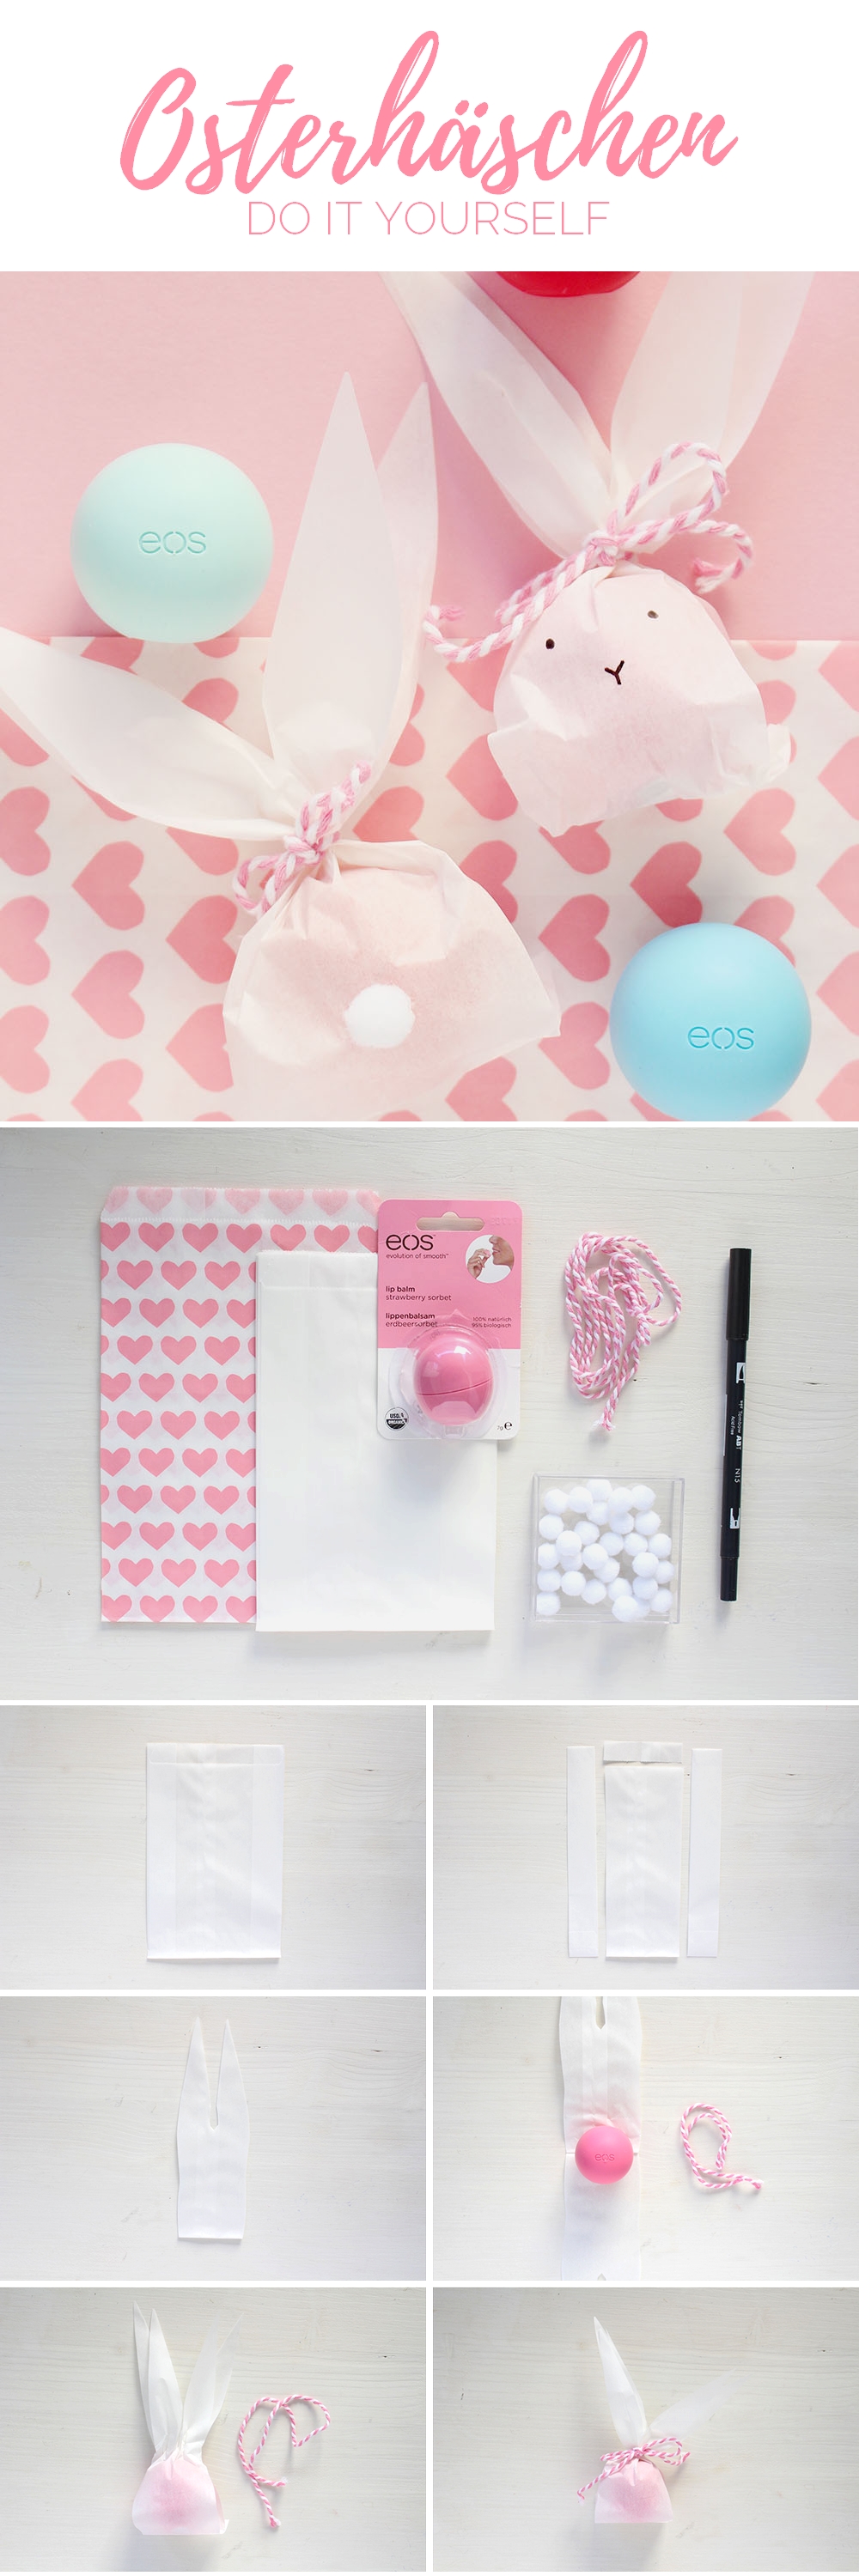 DIY: Süße Osterhäschen Geschenkverpackung mit eos Lippenbalsam